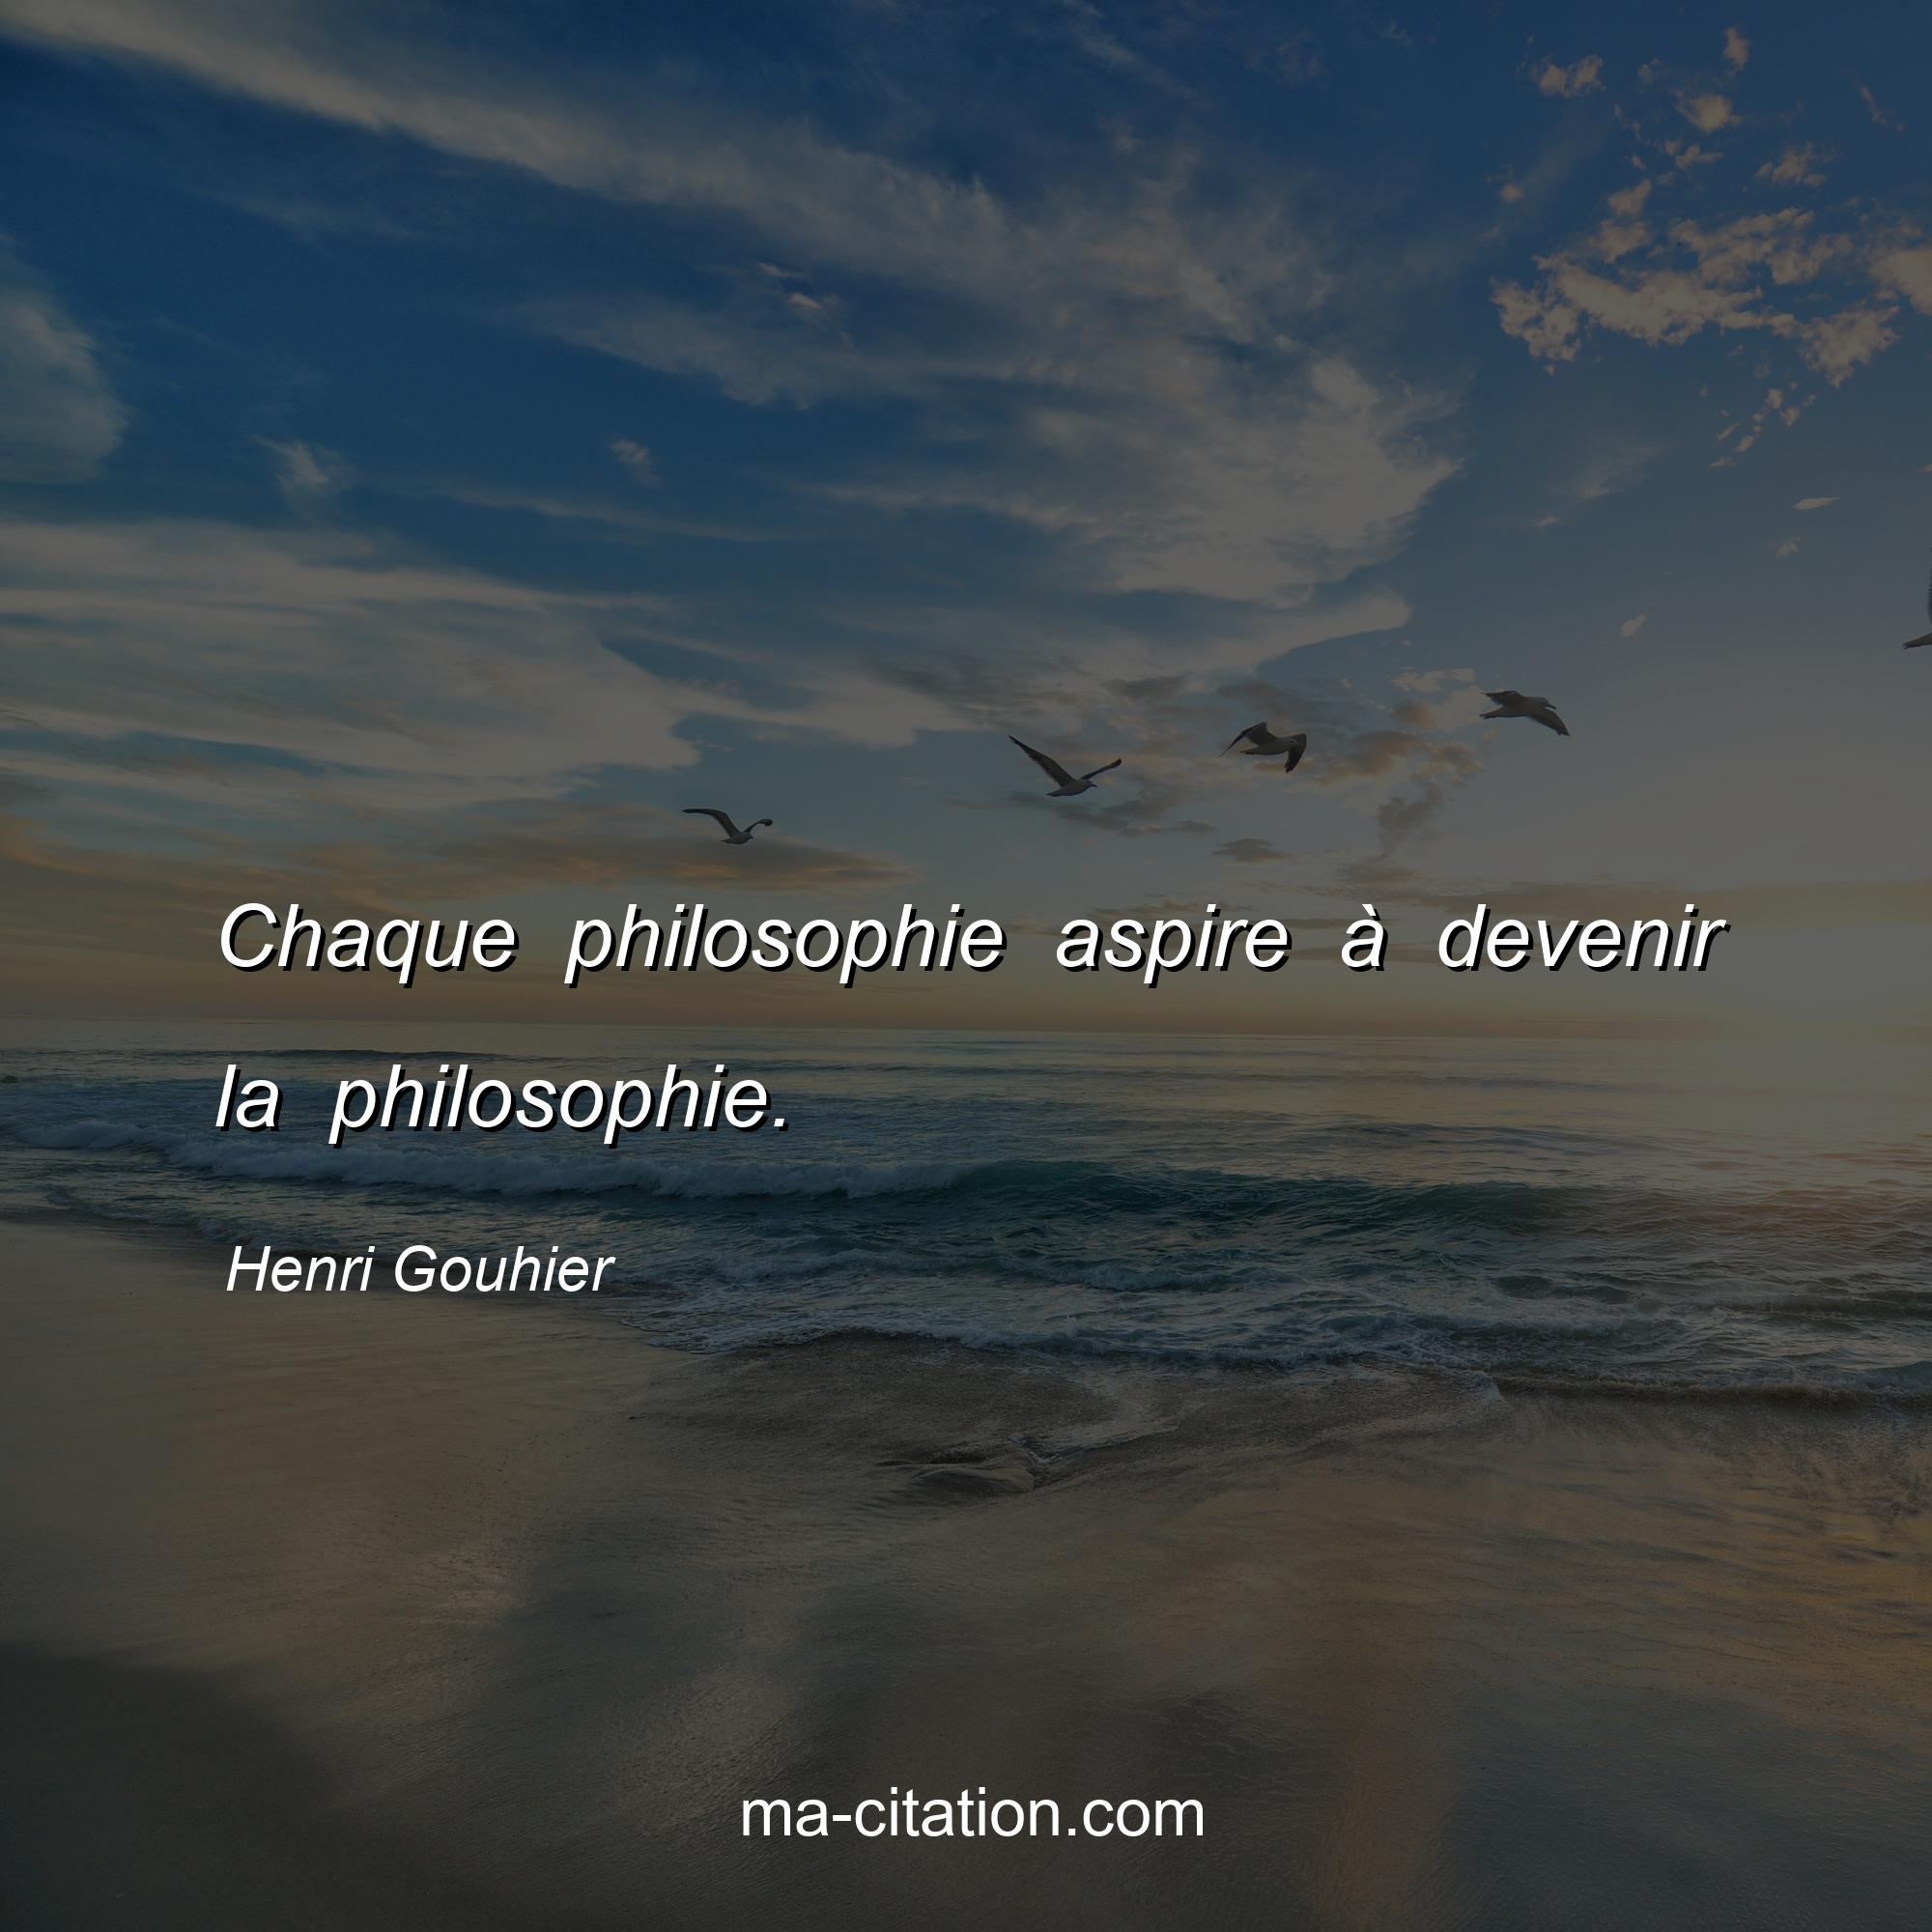 Henri Gouhier : Chaque philosophie aspire à devenir la philosophie.